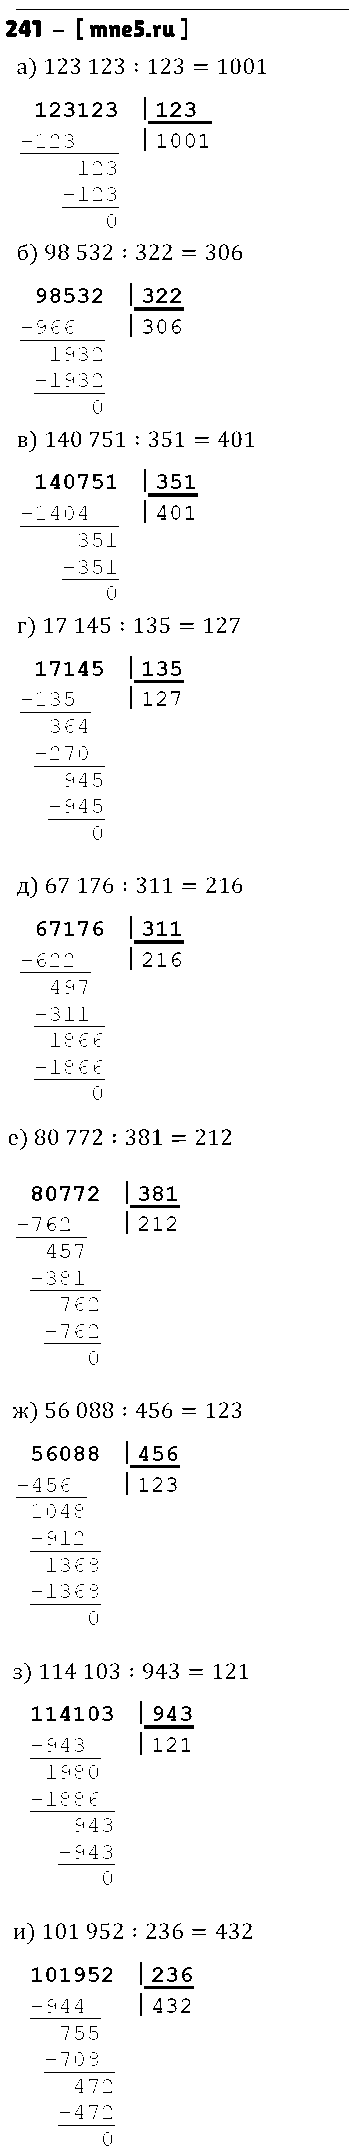 ГДЗ Математика 5 класс - 241